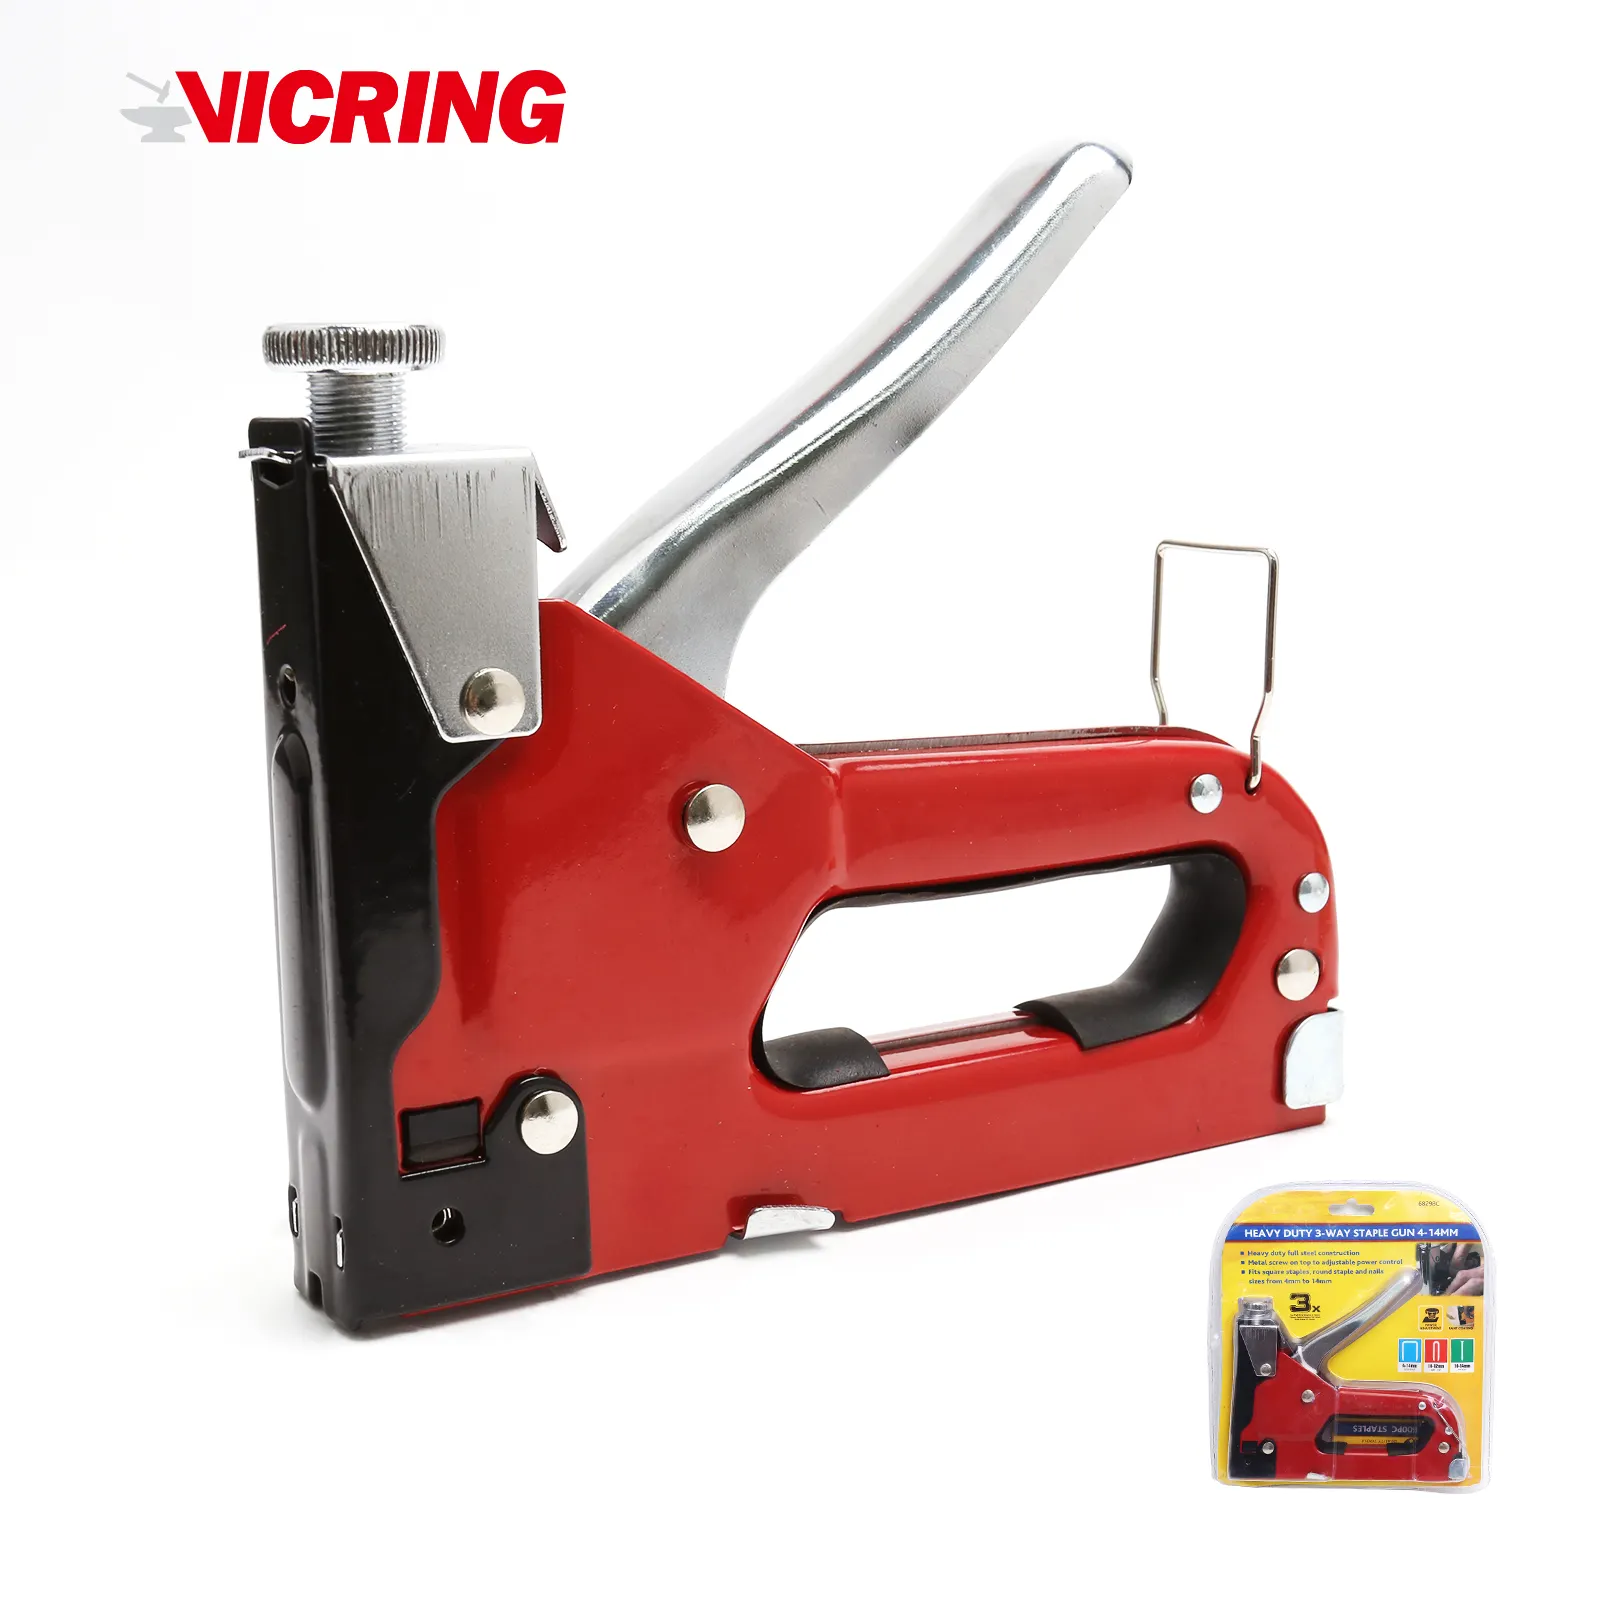 VICRING-grapadora de aluminio resistente, Color rojo, 3 vías, 4-14mm, precio de fábrica